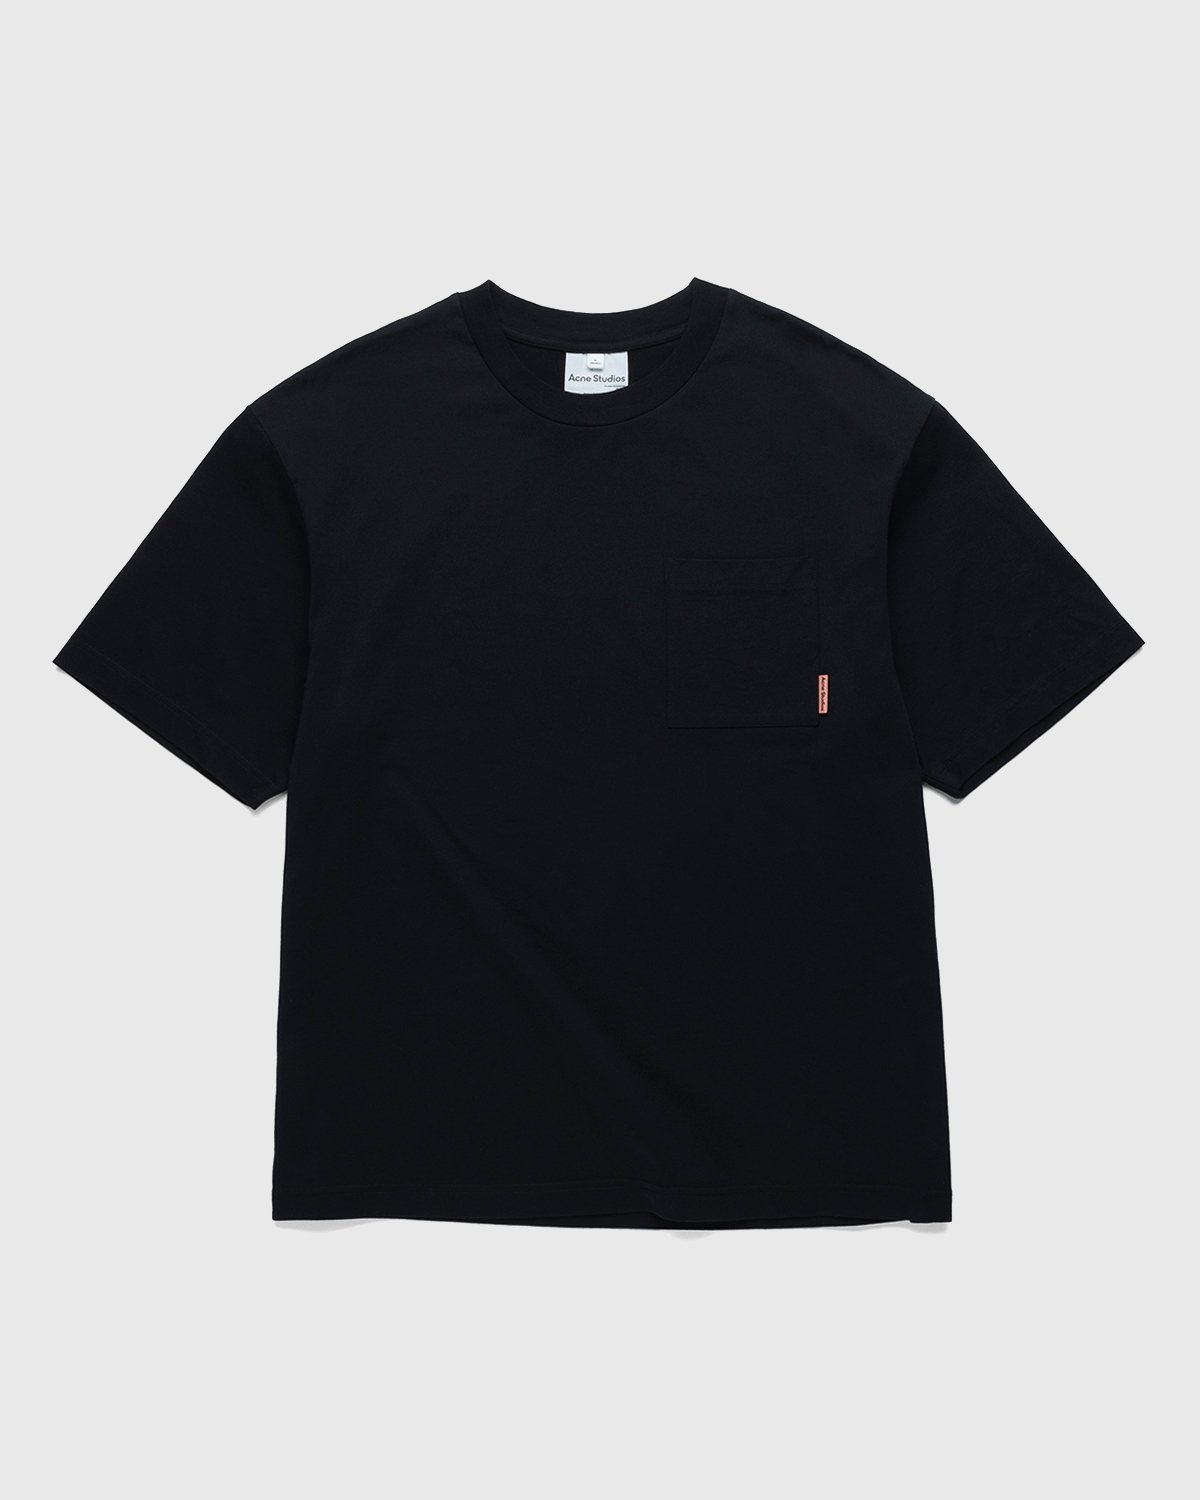 Acne Studios - Short Sleeve Pocket T-Shirt Black - Clothing - Black - Image 1